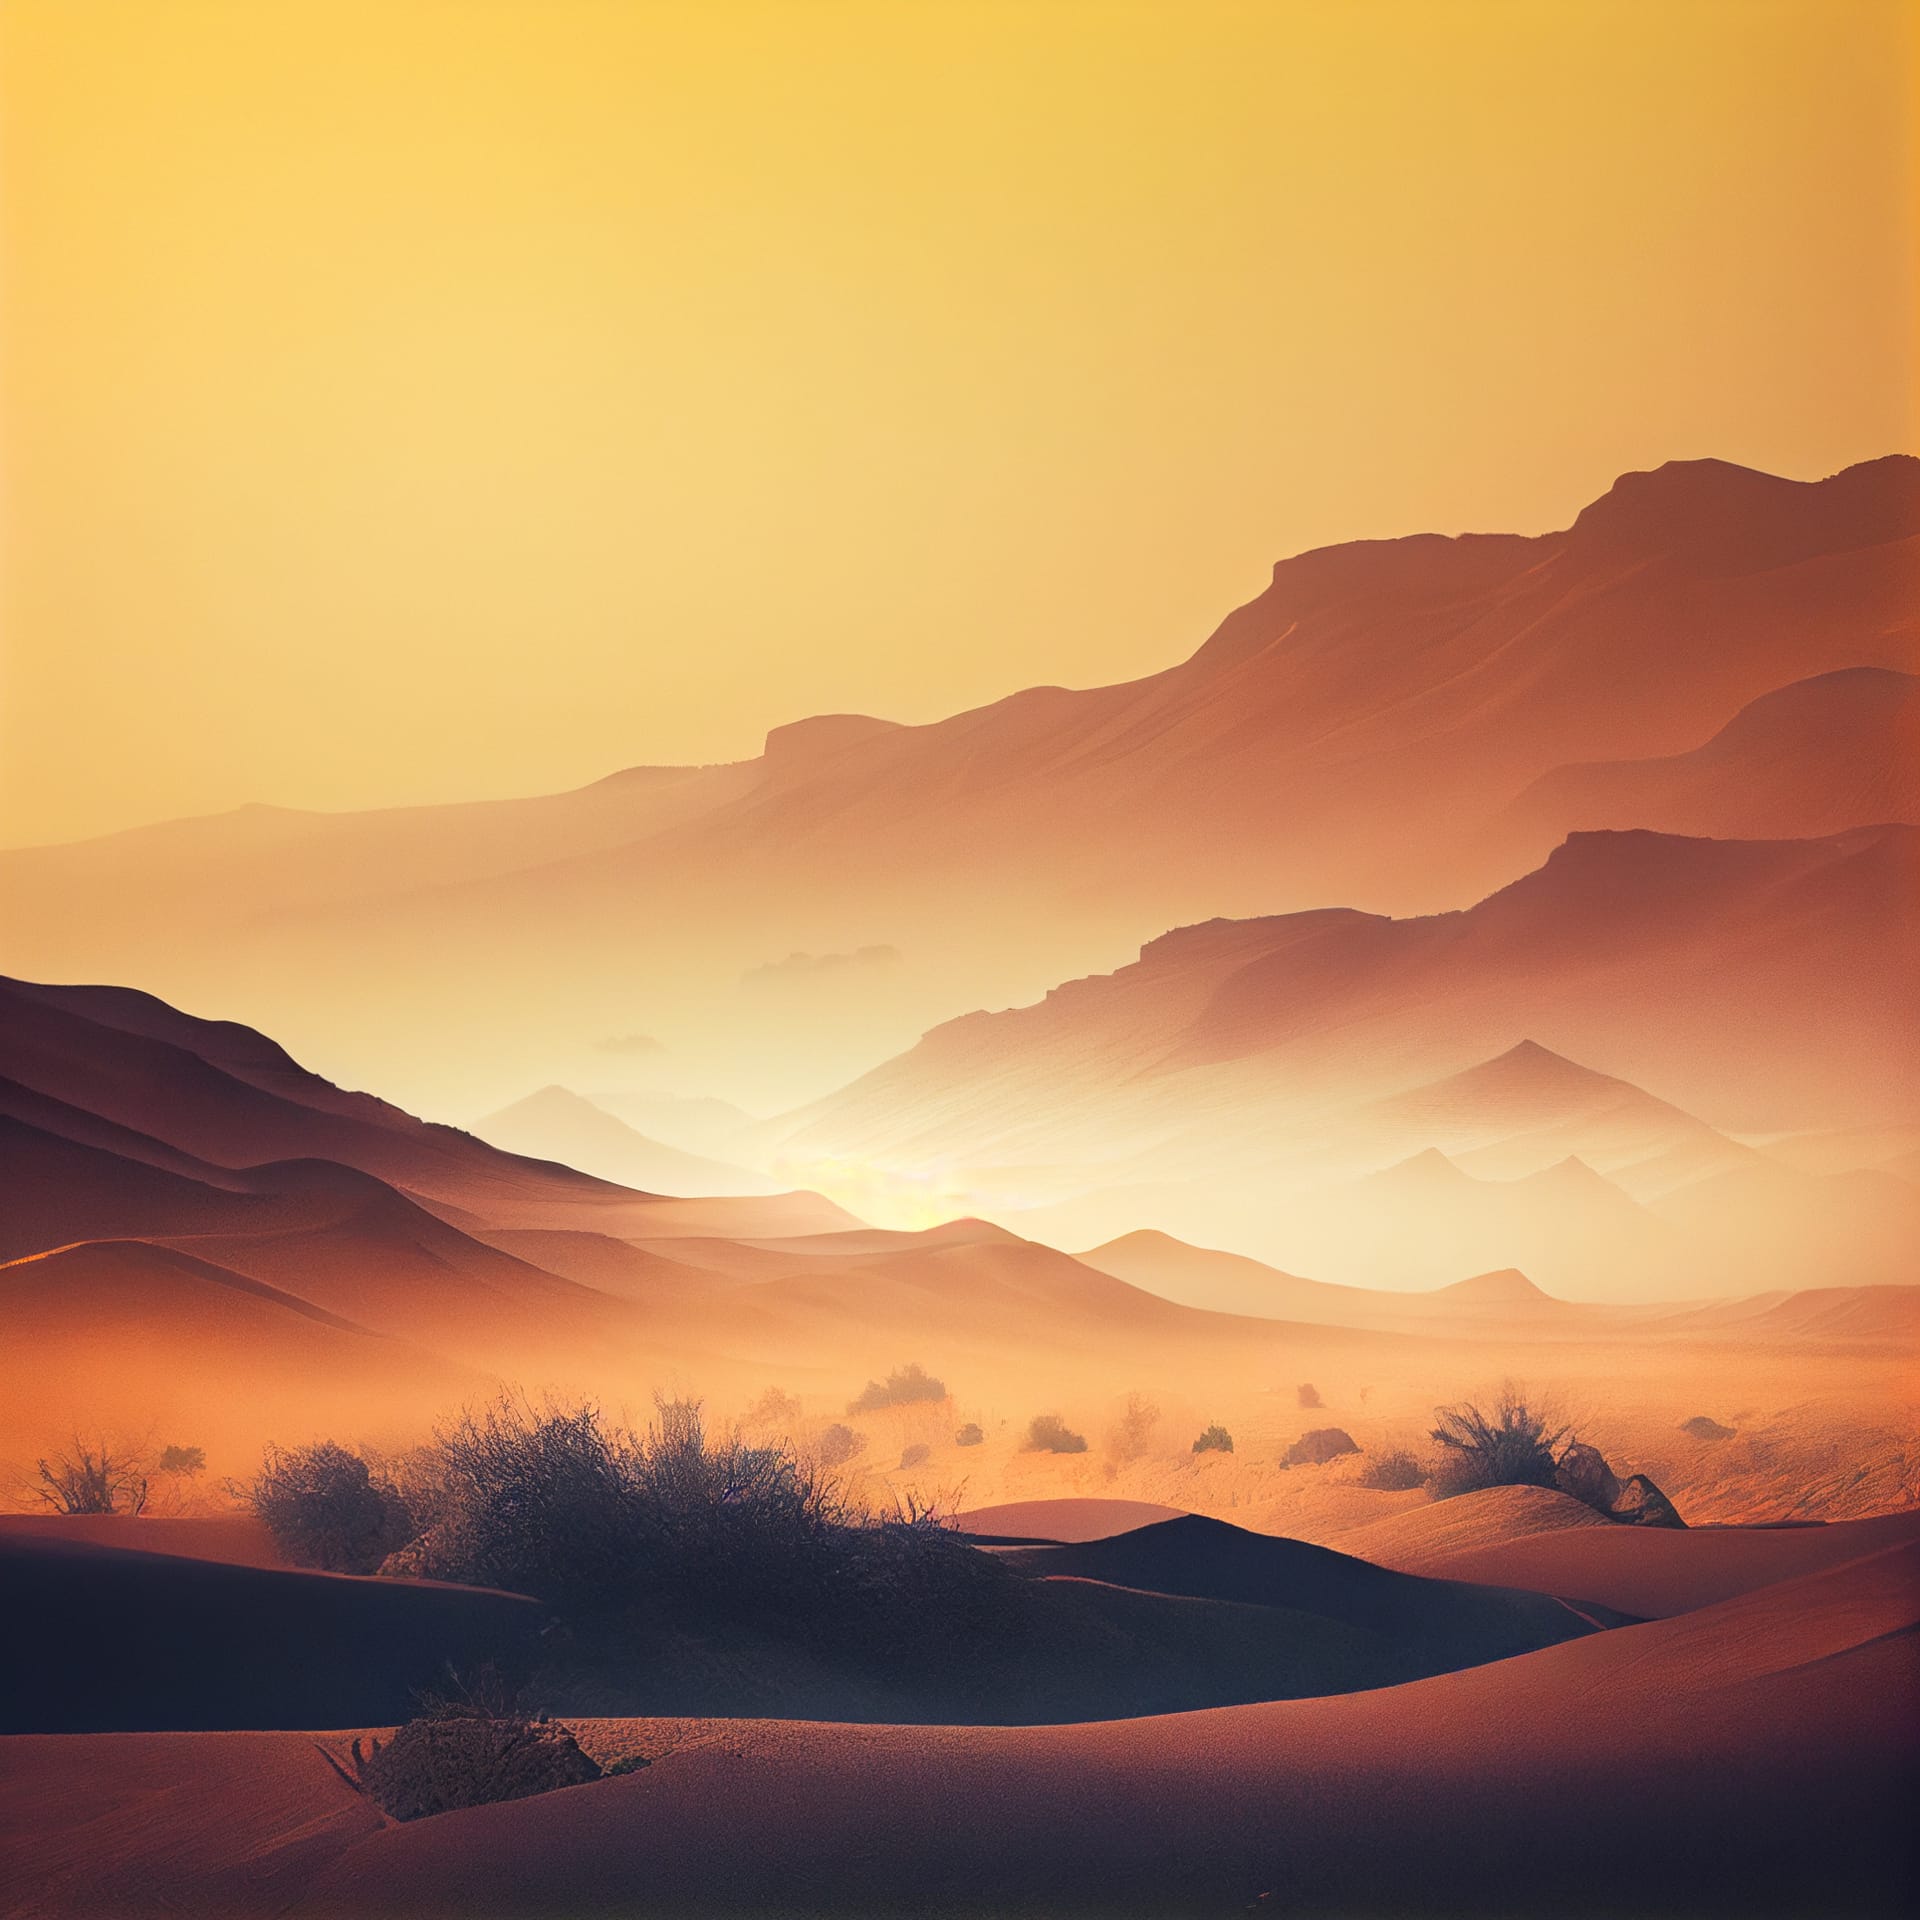 Beautiful desert landscape sunset sunrise excellent picture